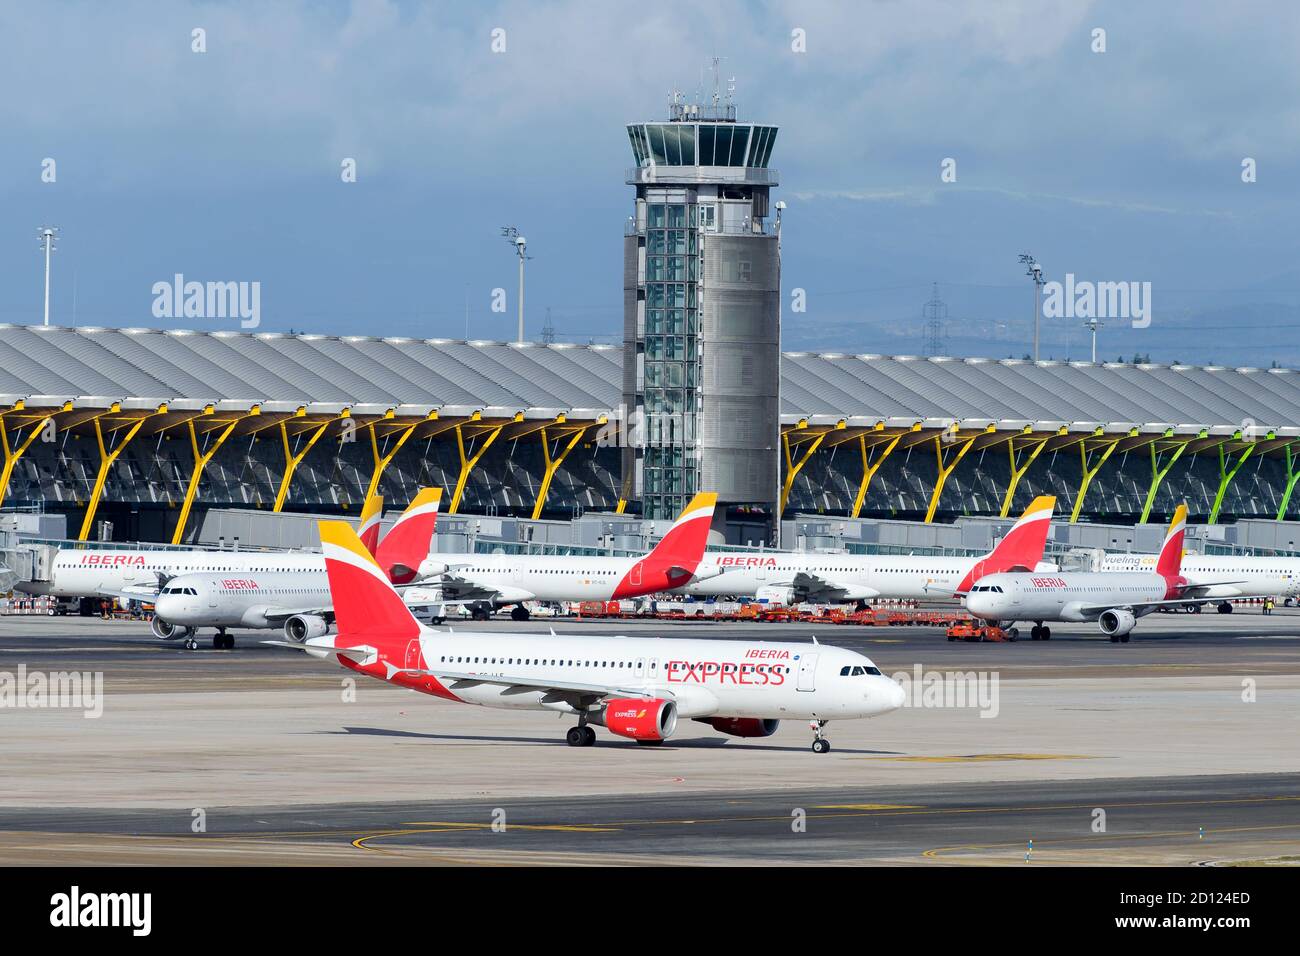 Più aerei Iberia Express e Iberia Airlines si sono schierati al terminal 4 dell'aeroporto di Barajas (LEMD). Periodo di viaggio occupato in hub delle compagnie aeree in Spagna. Foto Stock